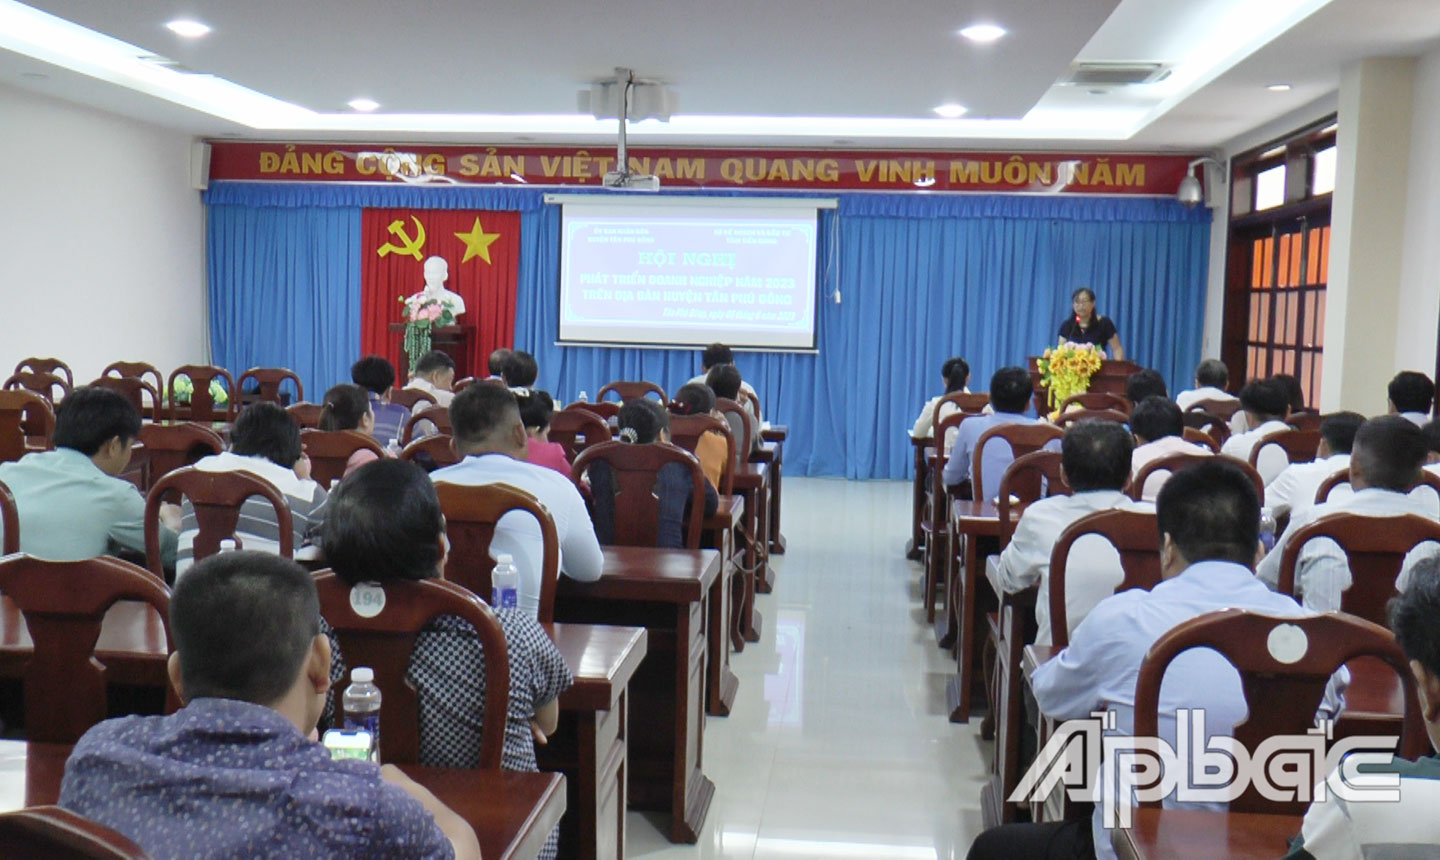 Huyện Tân Phú Đông: Tháo gỡ khó khăn, hỗ trợ doanh nghiệp phát triển